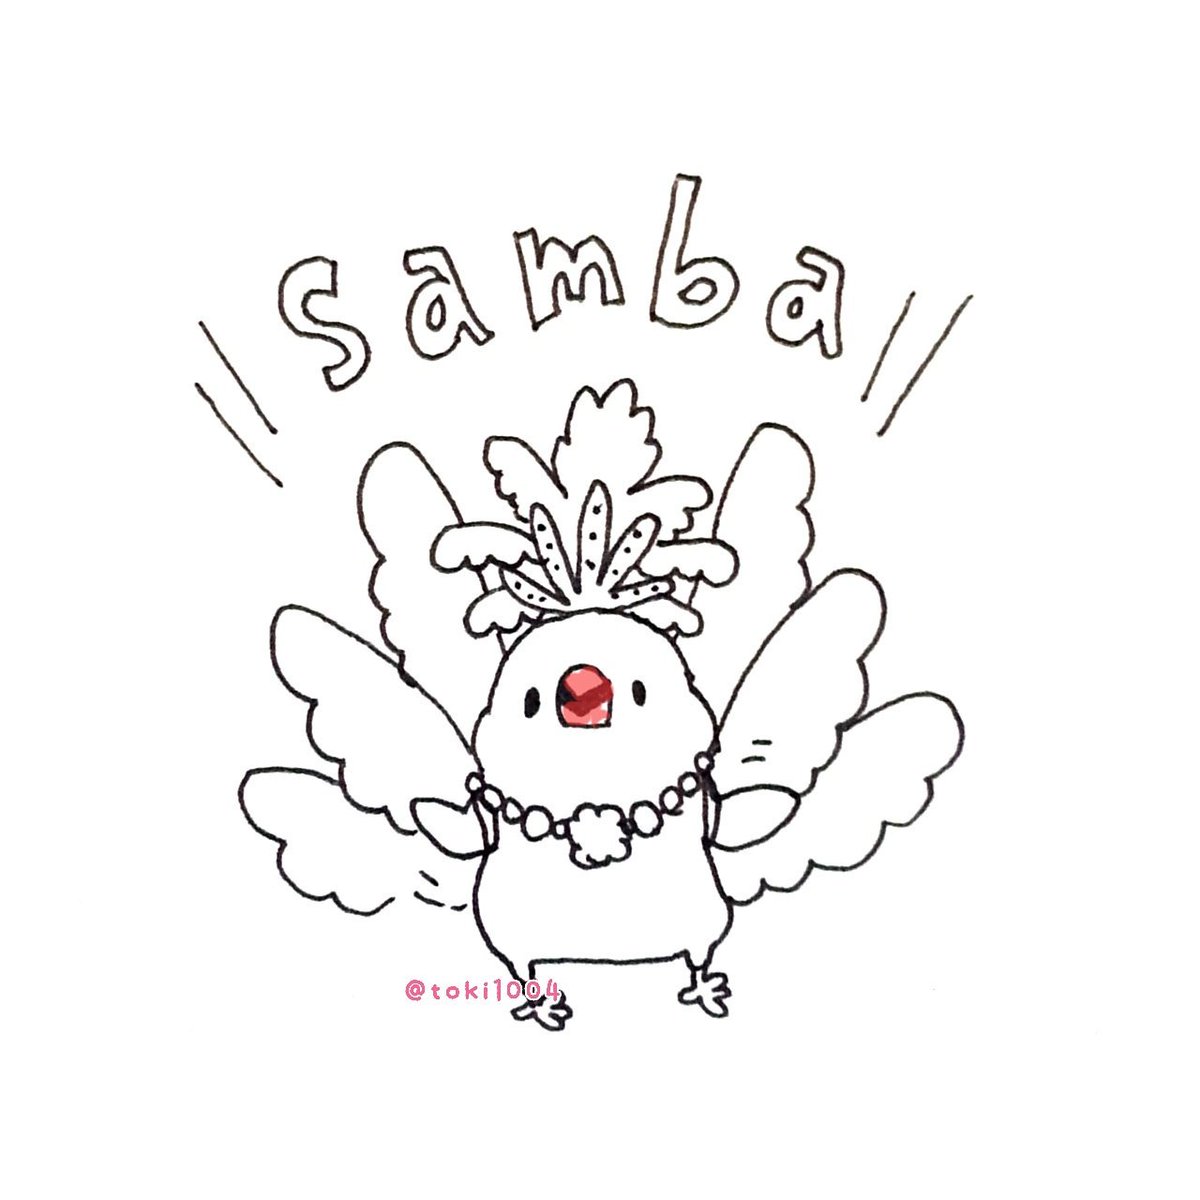 とき على تويتر さんば 絵 イラスト イラストレーター お絵描き ドローイング 一発描き ボールペン 文鳥 Bird らくがき 一日一絵 イラスト基地 サンバ Samba ダンス ブラジル カーニバル T Co Pyiwi4urpd